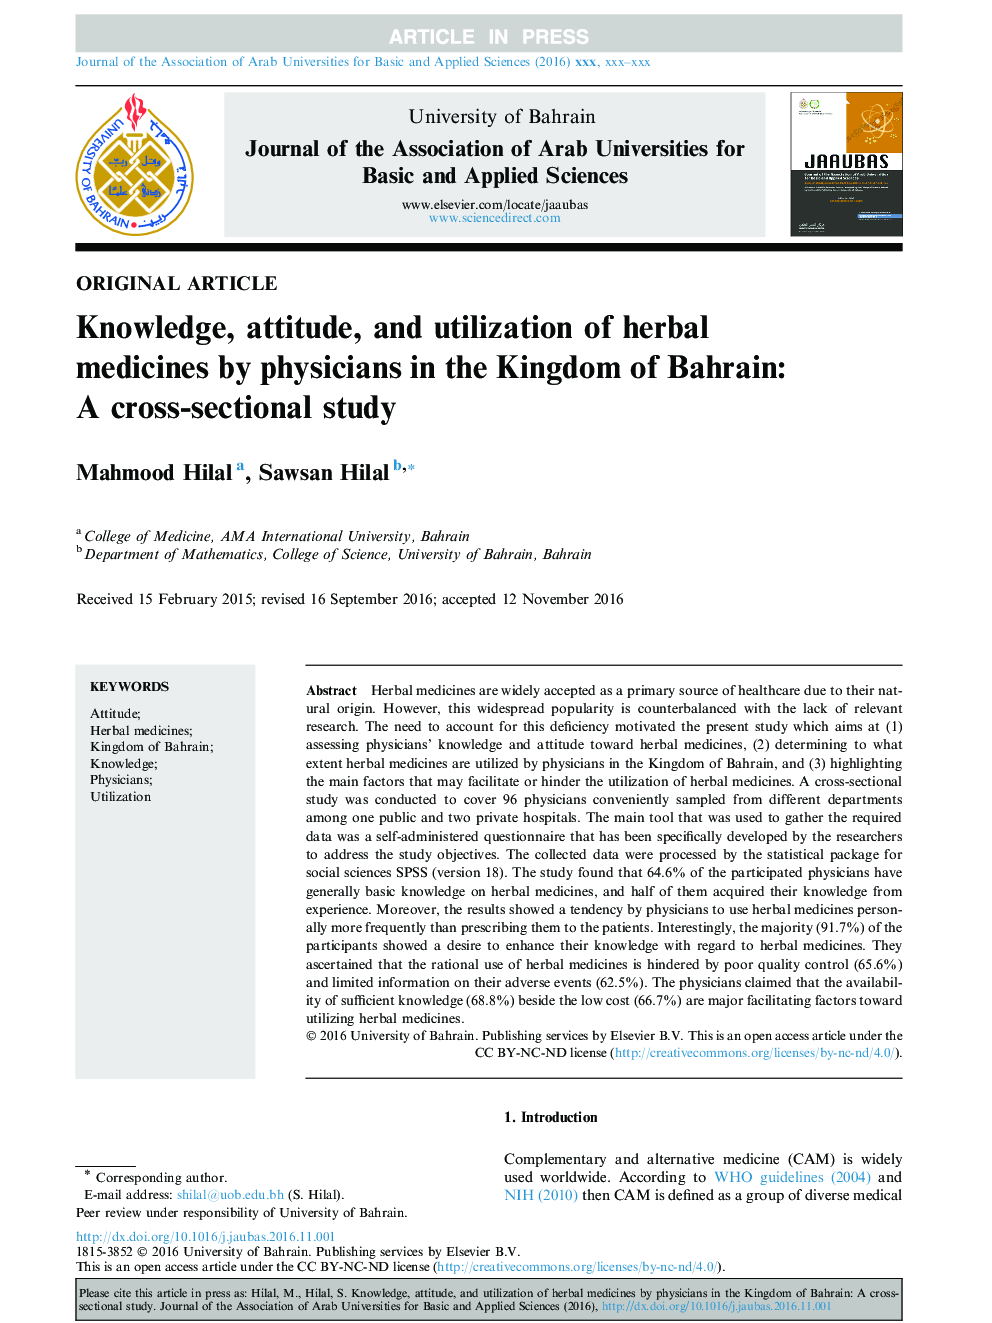 دانش، نگرش و استفاده از داروهای گیاهی توسط پزشکان در پادشاهی بحرین: یک مطالعه مقطعی 